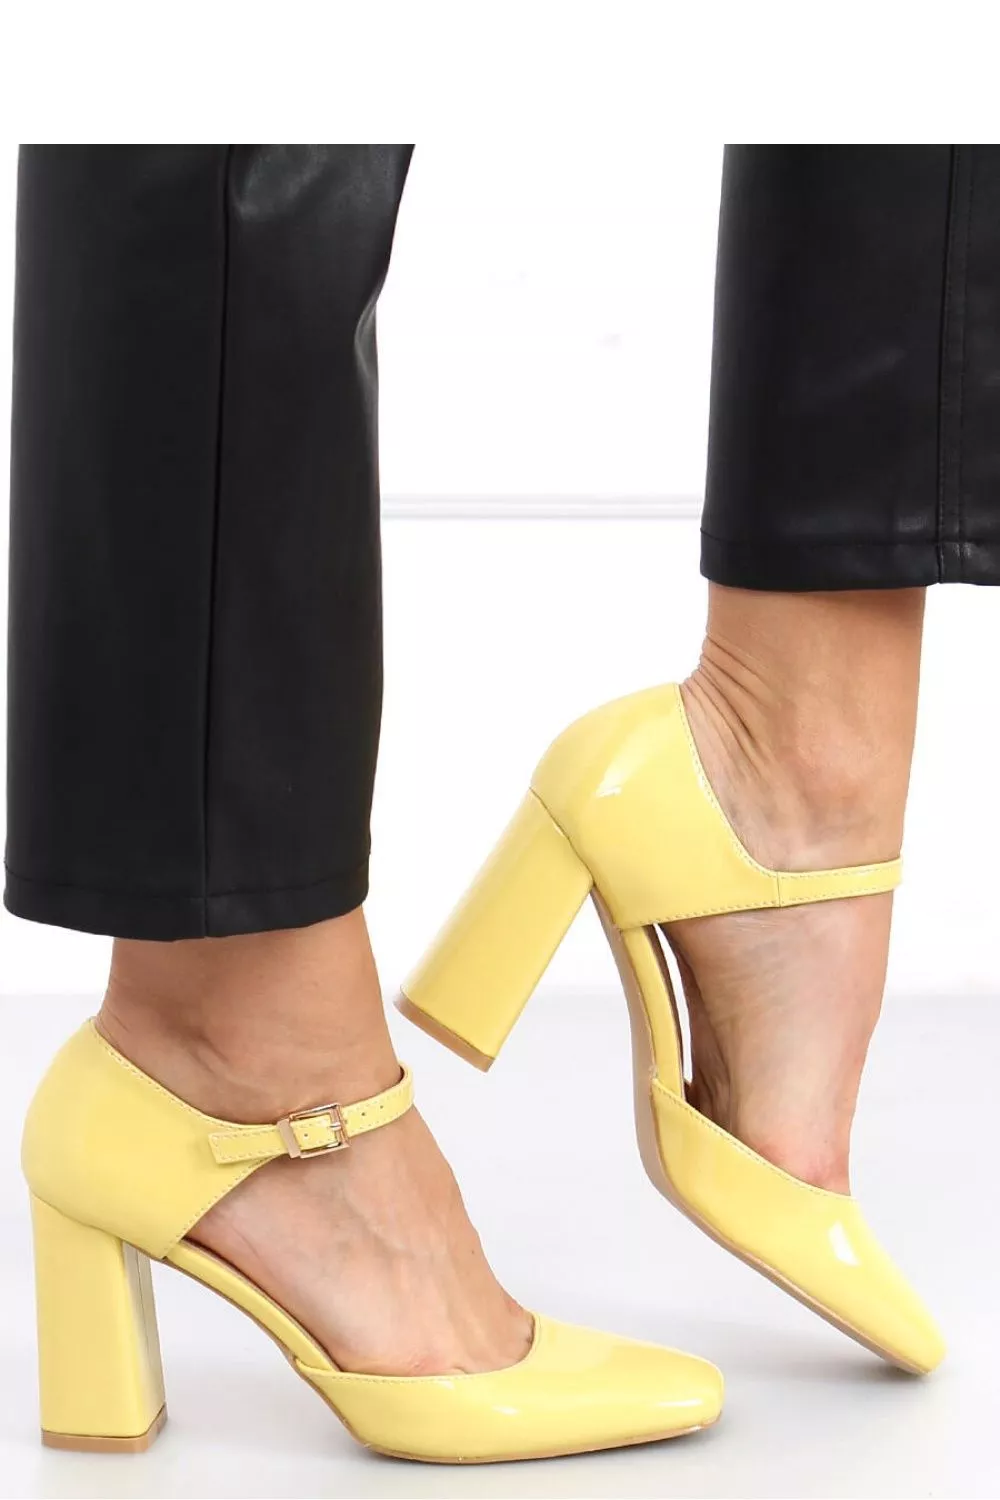 Pantofi cu toc galben - pantofi cu toc